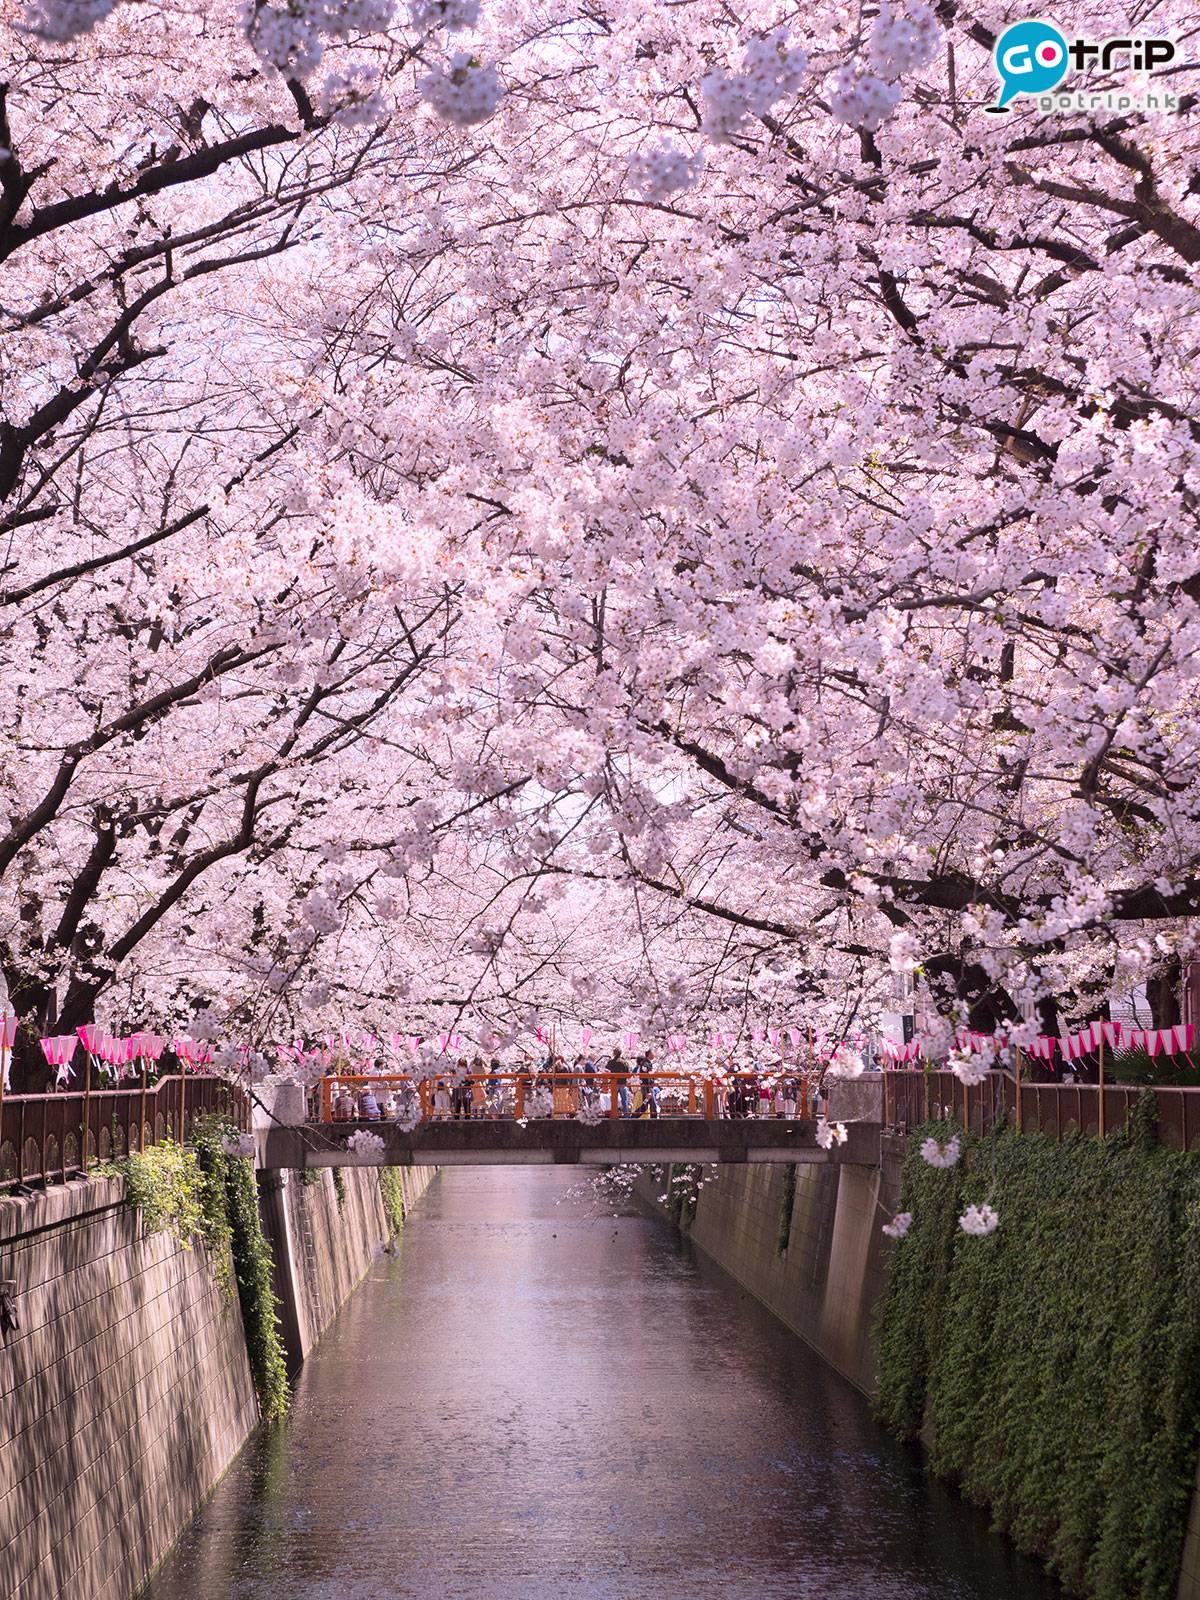 目黑川4公里長的河岸兩旁，種了8百棵「染井吉野」櫻花樹，開得澎湃的櫻花為目黑川染上一抹浪漫的粉紅色。